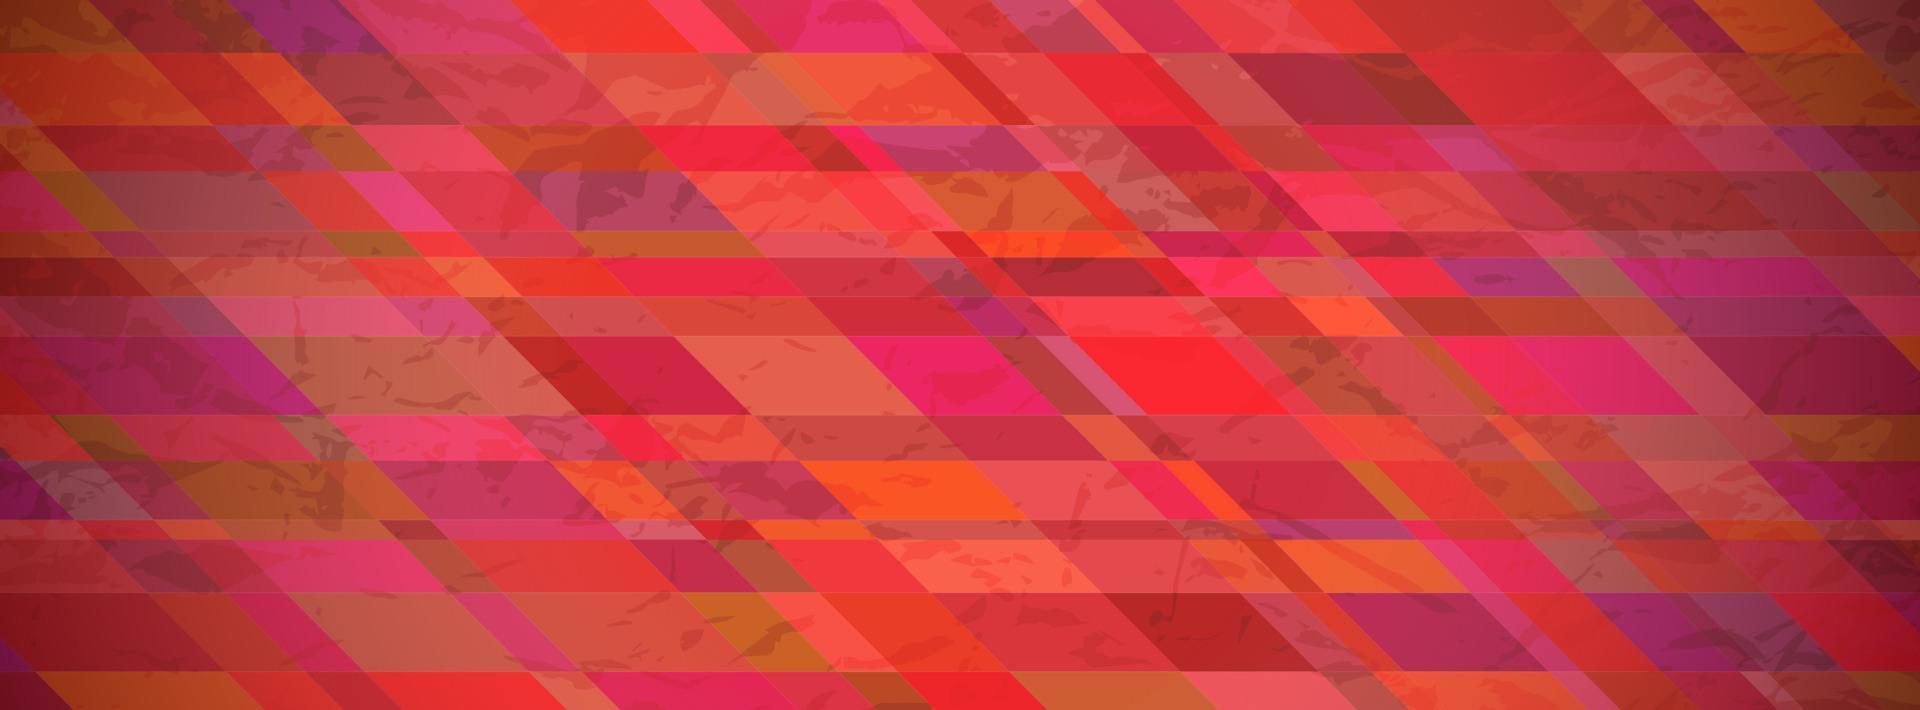 abstrakter strukturierter Hintergrund mit roten bunten Rechtecken. Banner-Design. schönes futuristisches dynamisches geometrisches Musterdesign. Vektor-Illustration vektor